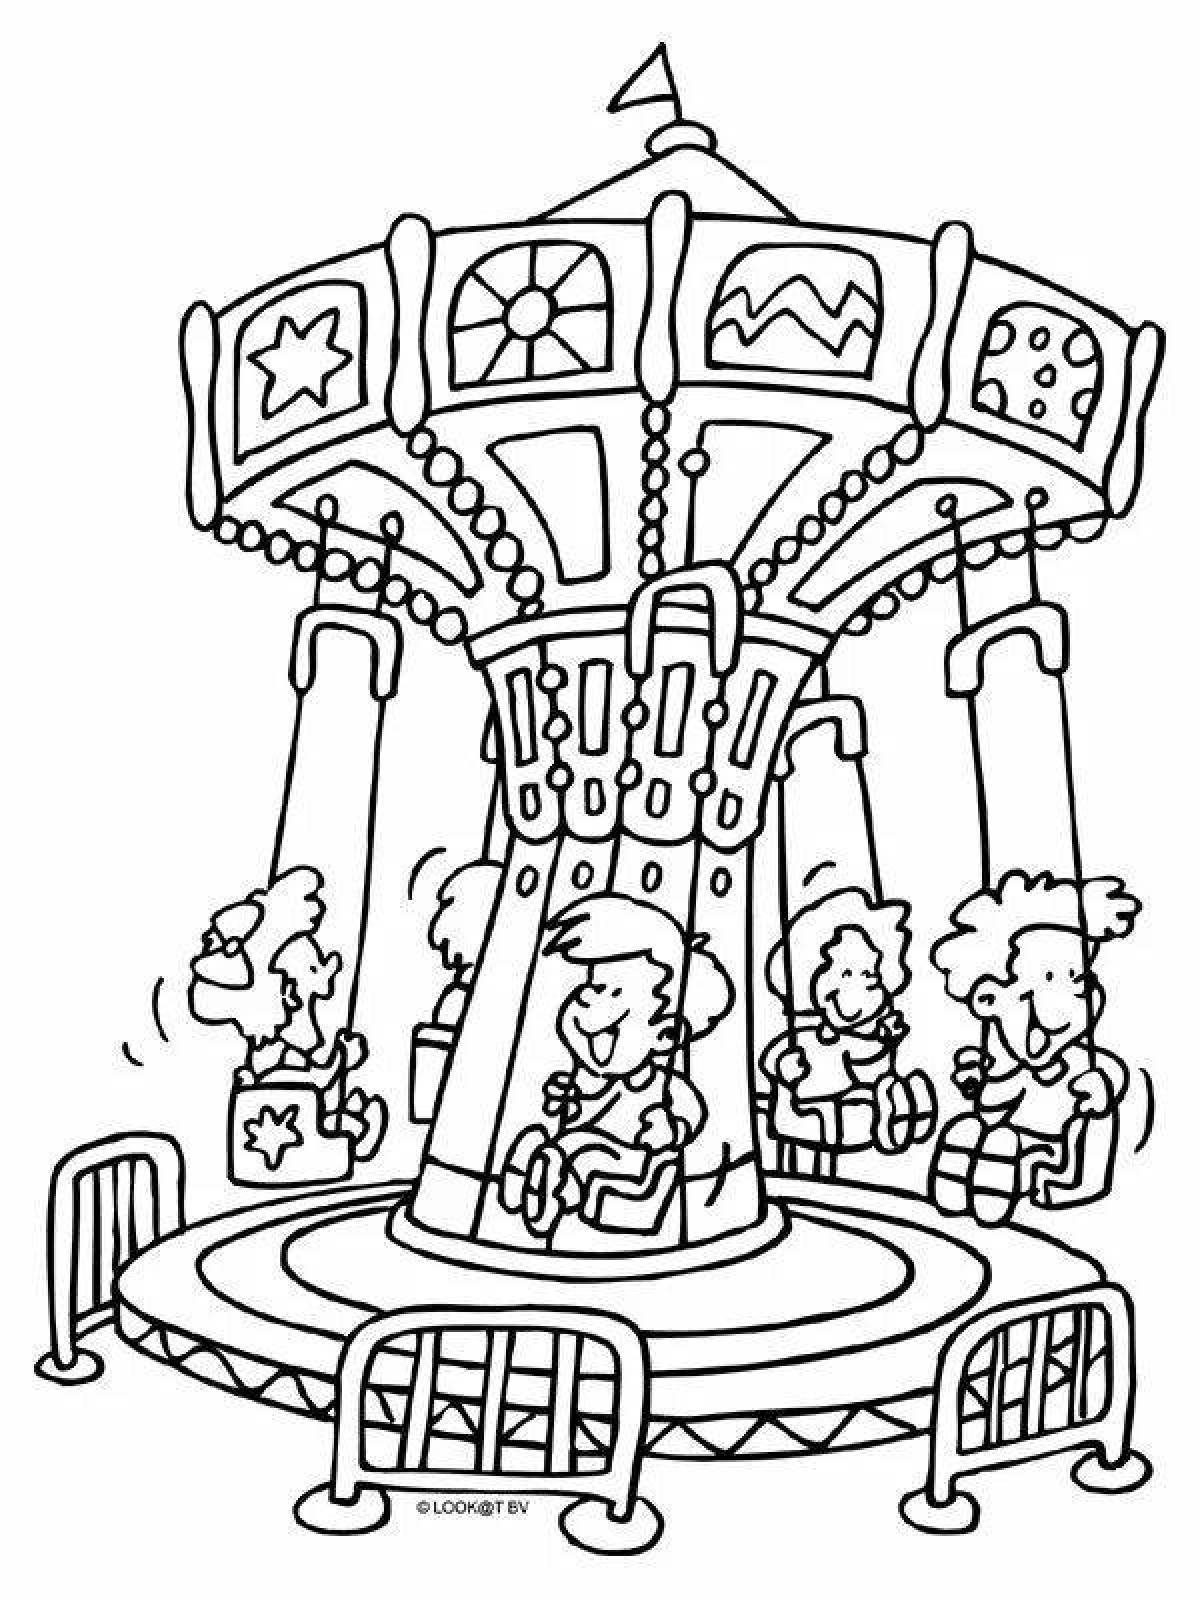 Playful amusement park coloring page